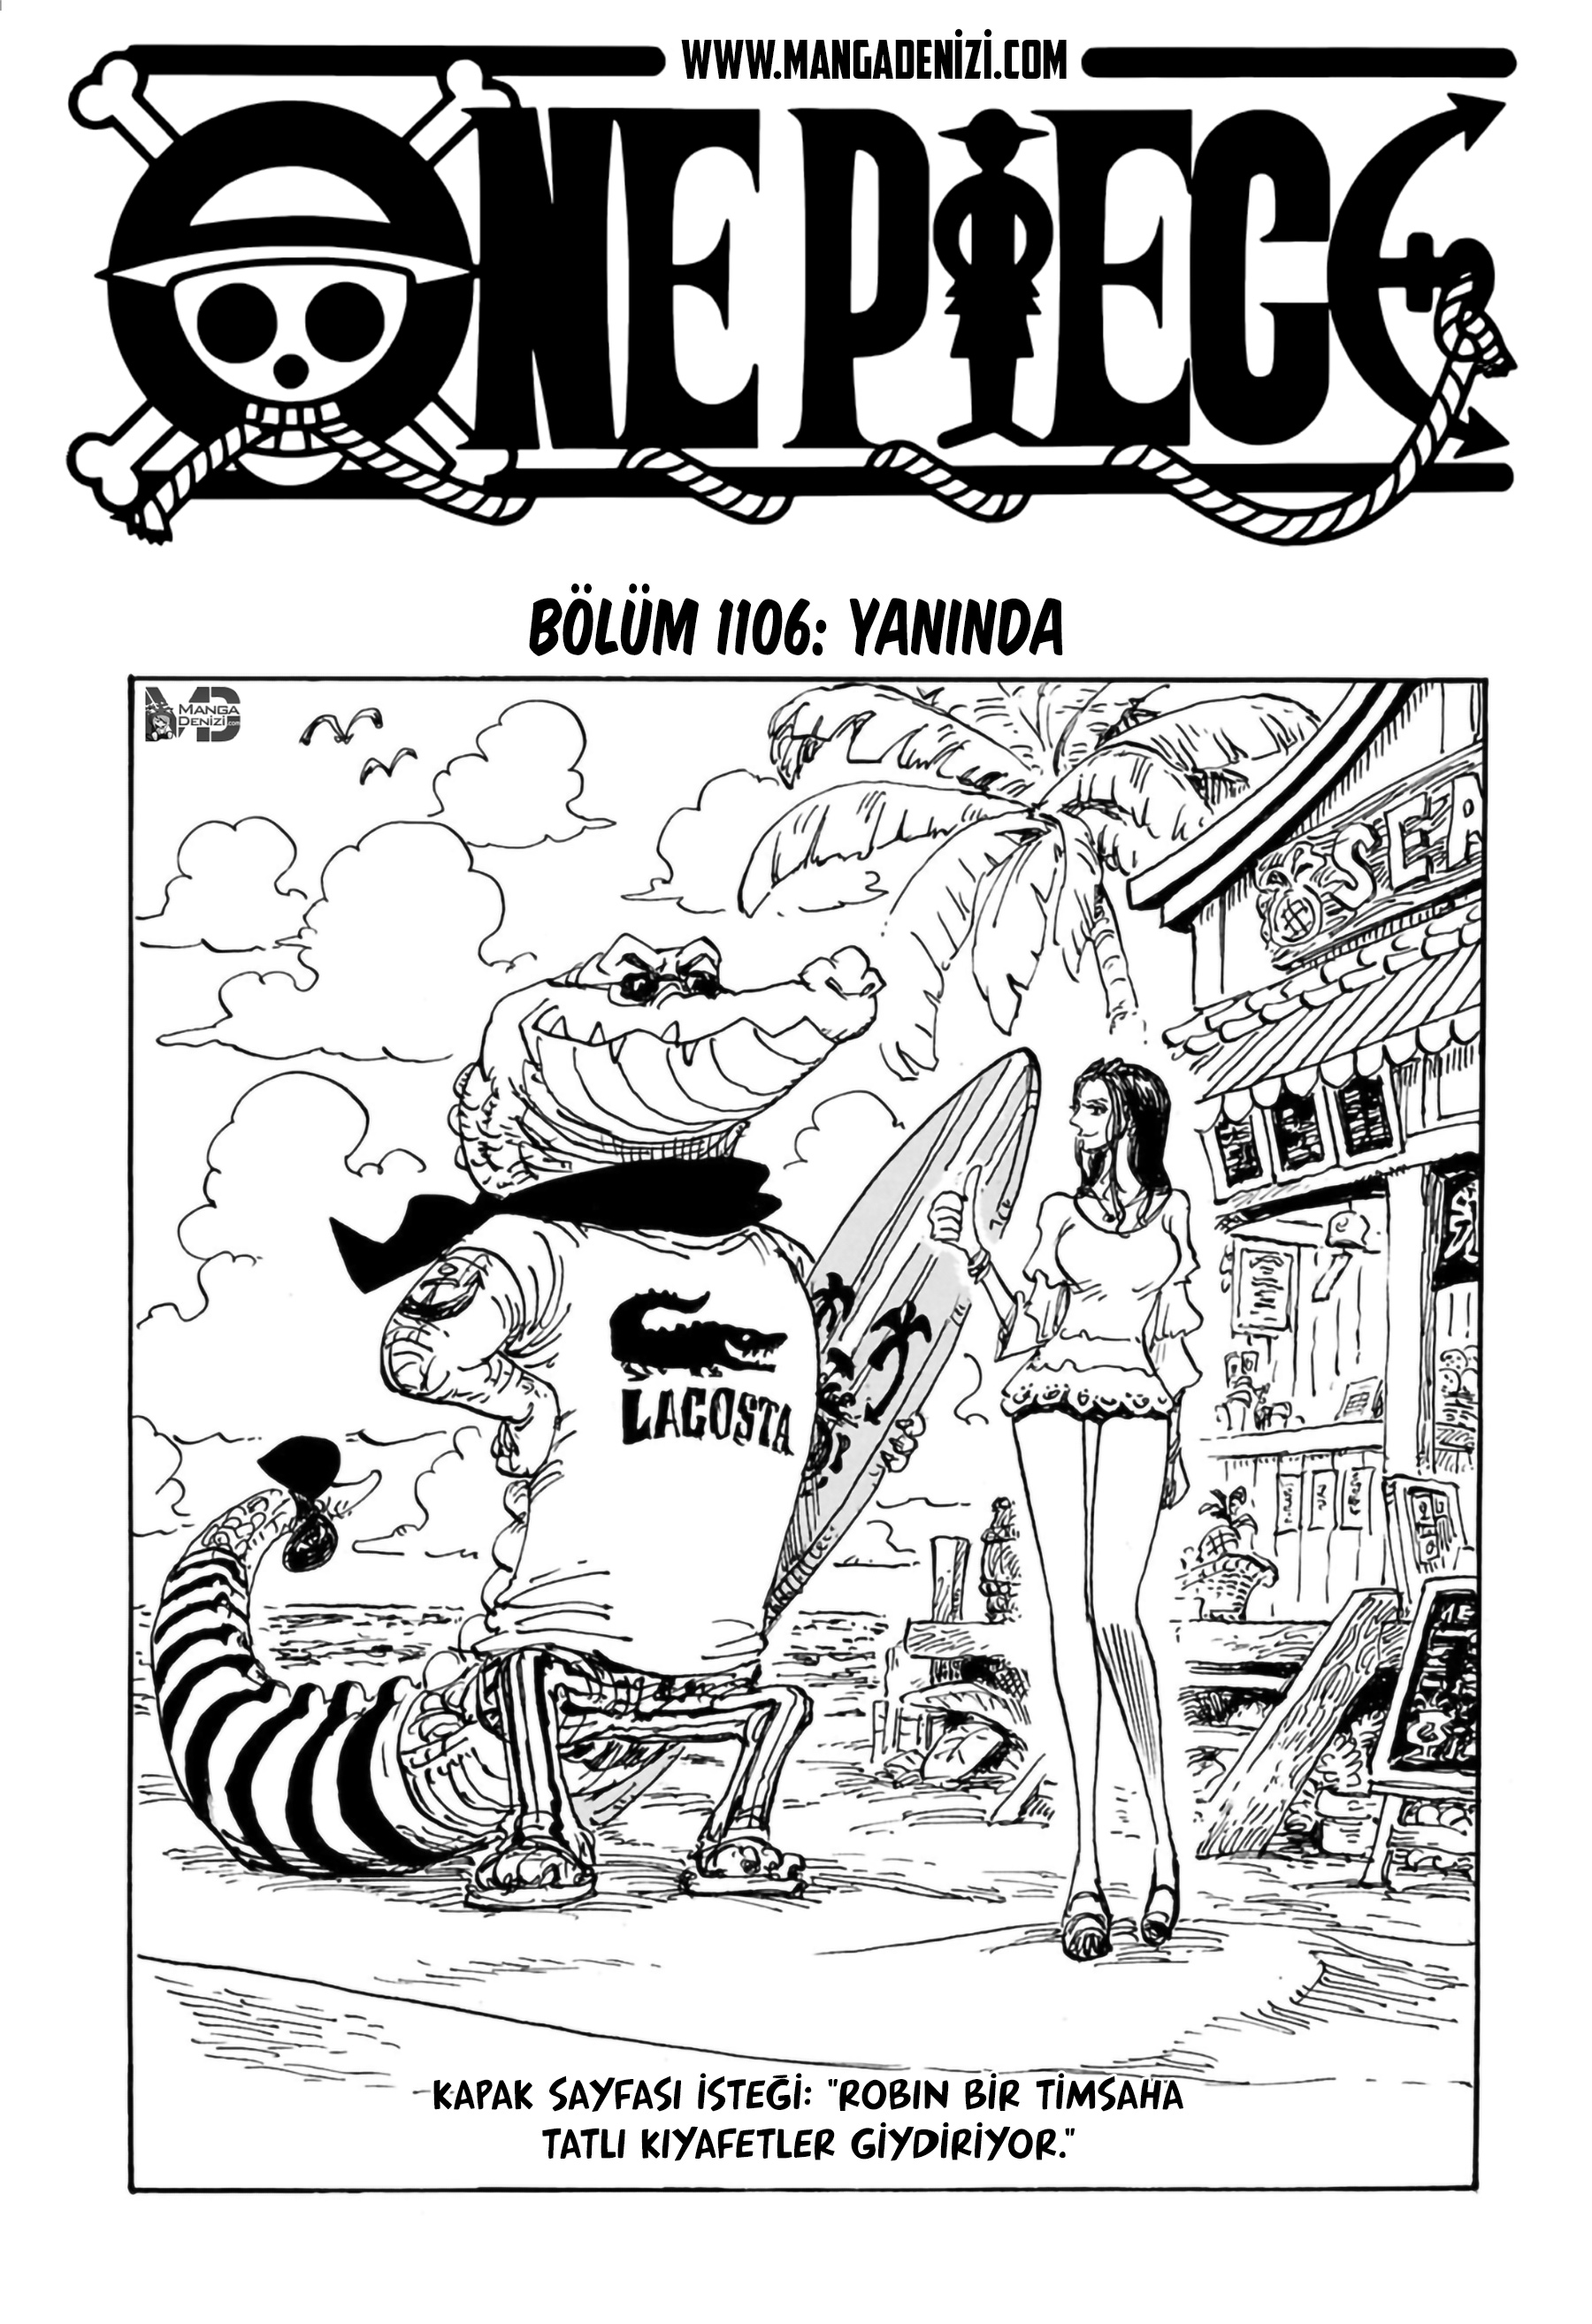 One Piece mangasının 1106 bölümünün 2. sayfasını okuyorsunuz.